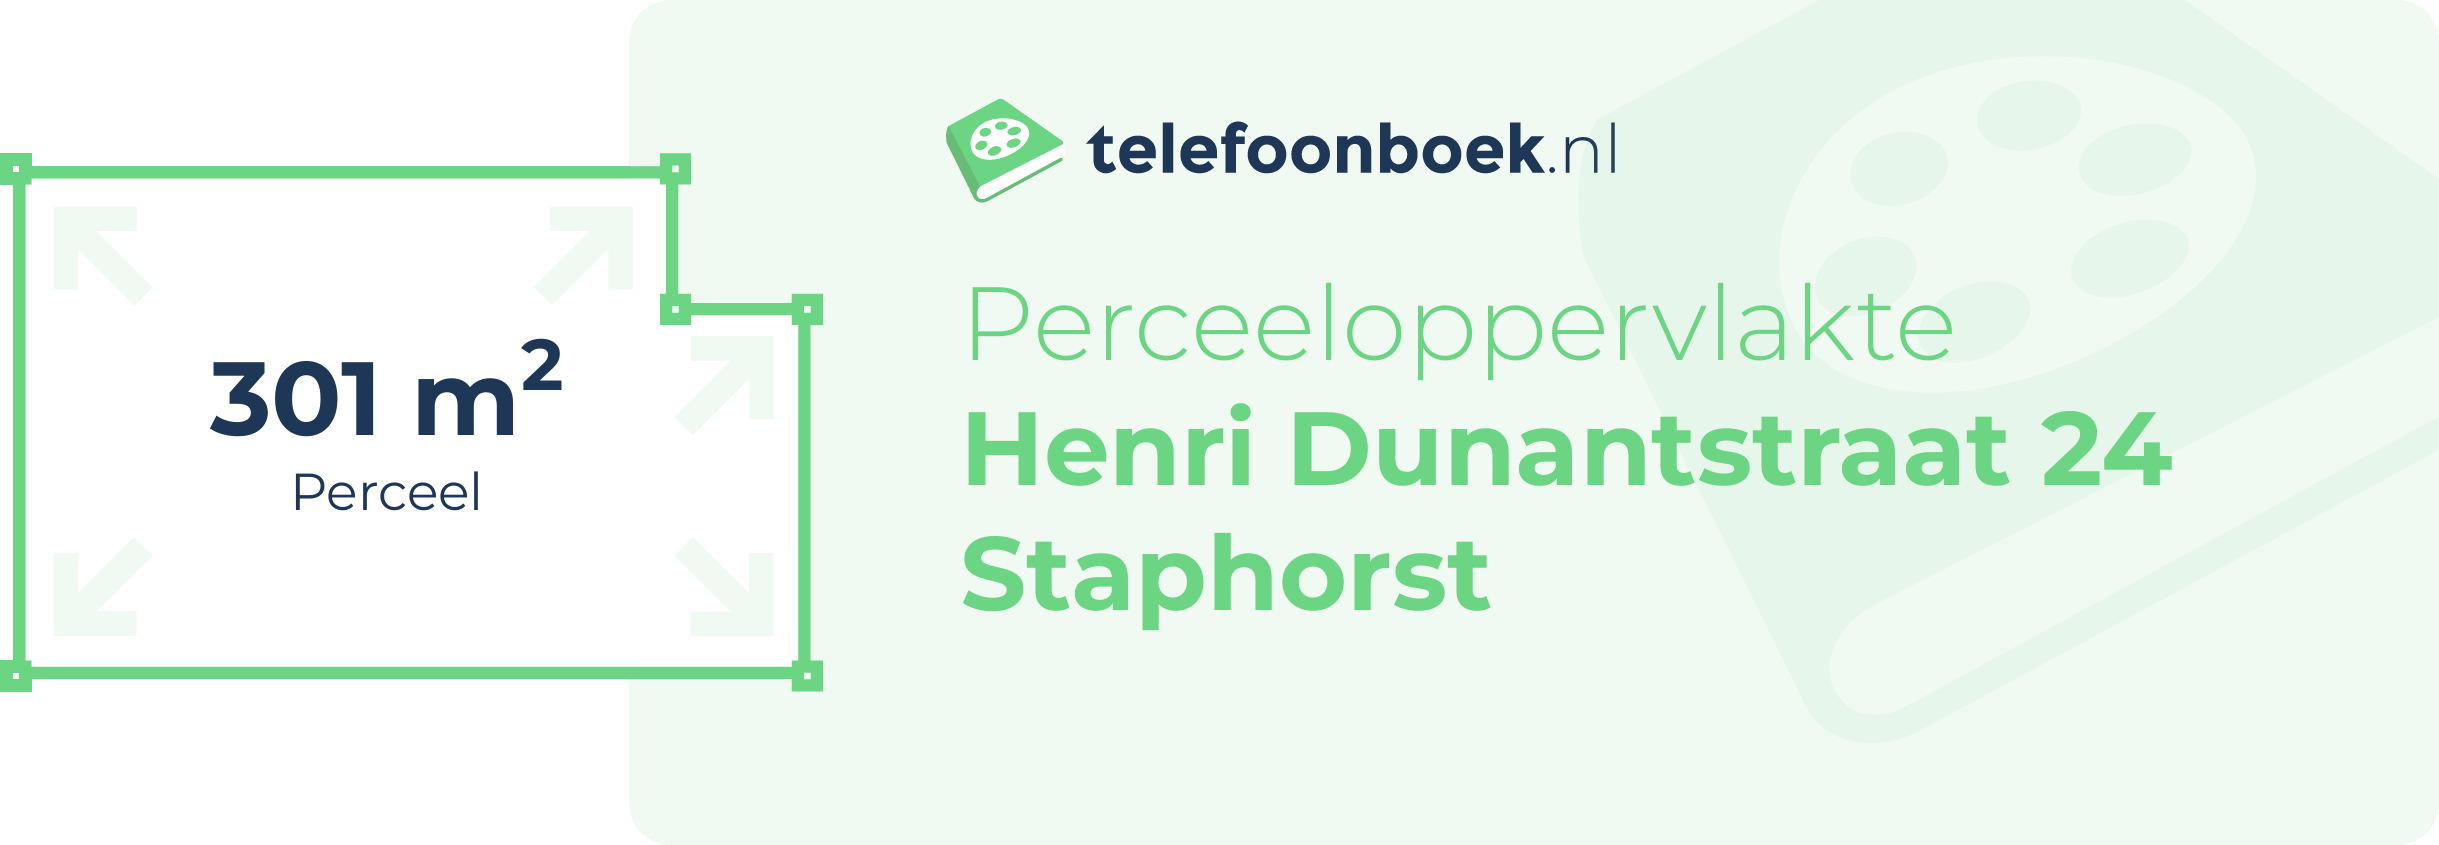 Perceeloppervlakte Henri Dunantstraat 24 Staphorst